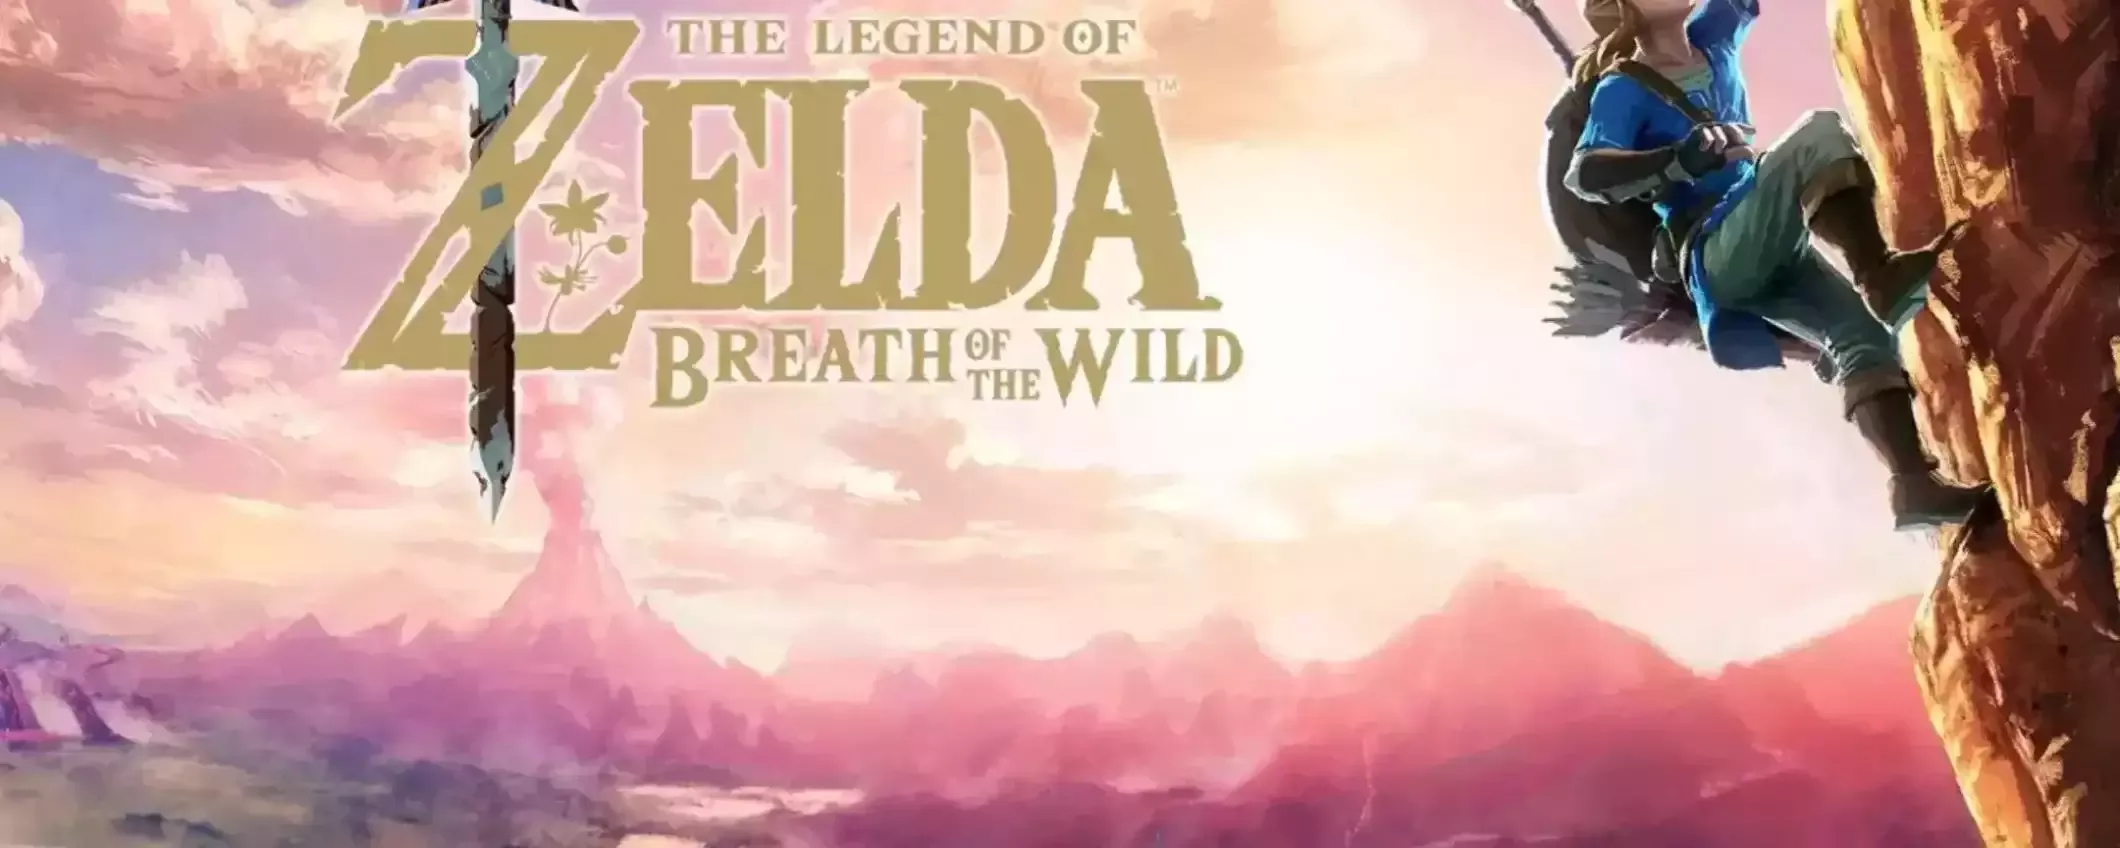 The Legend of Zelda: Breath of the Wild, il gioco DA AVERE nella tua collezione